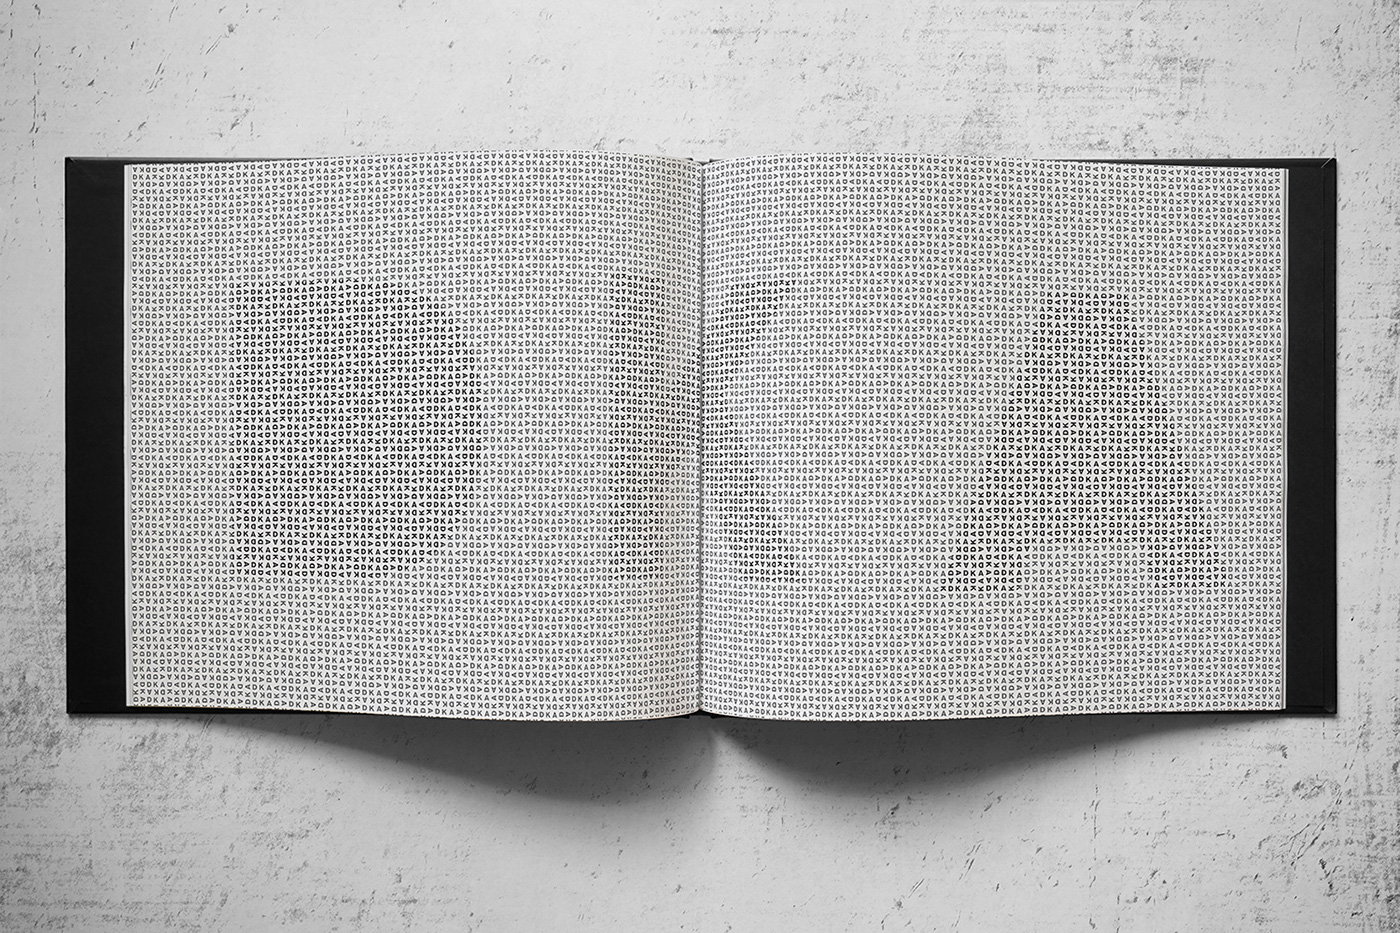 book coffee table modular grid DKA modern elegant art editorial clean system architect